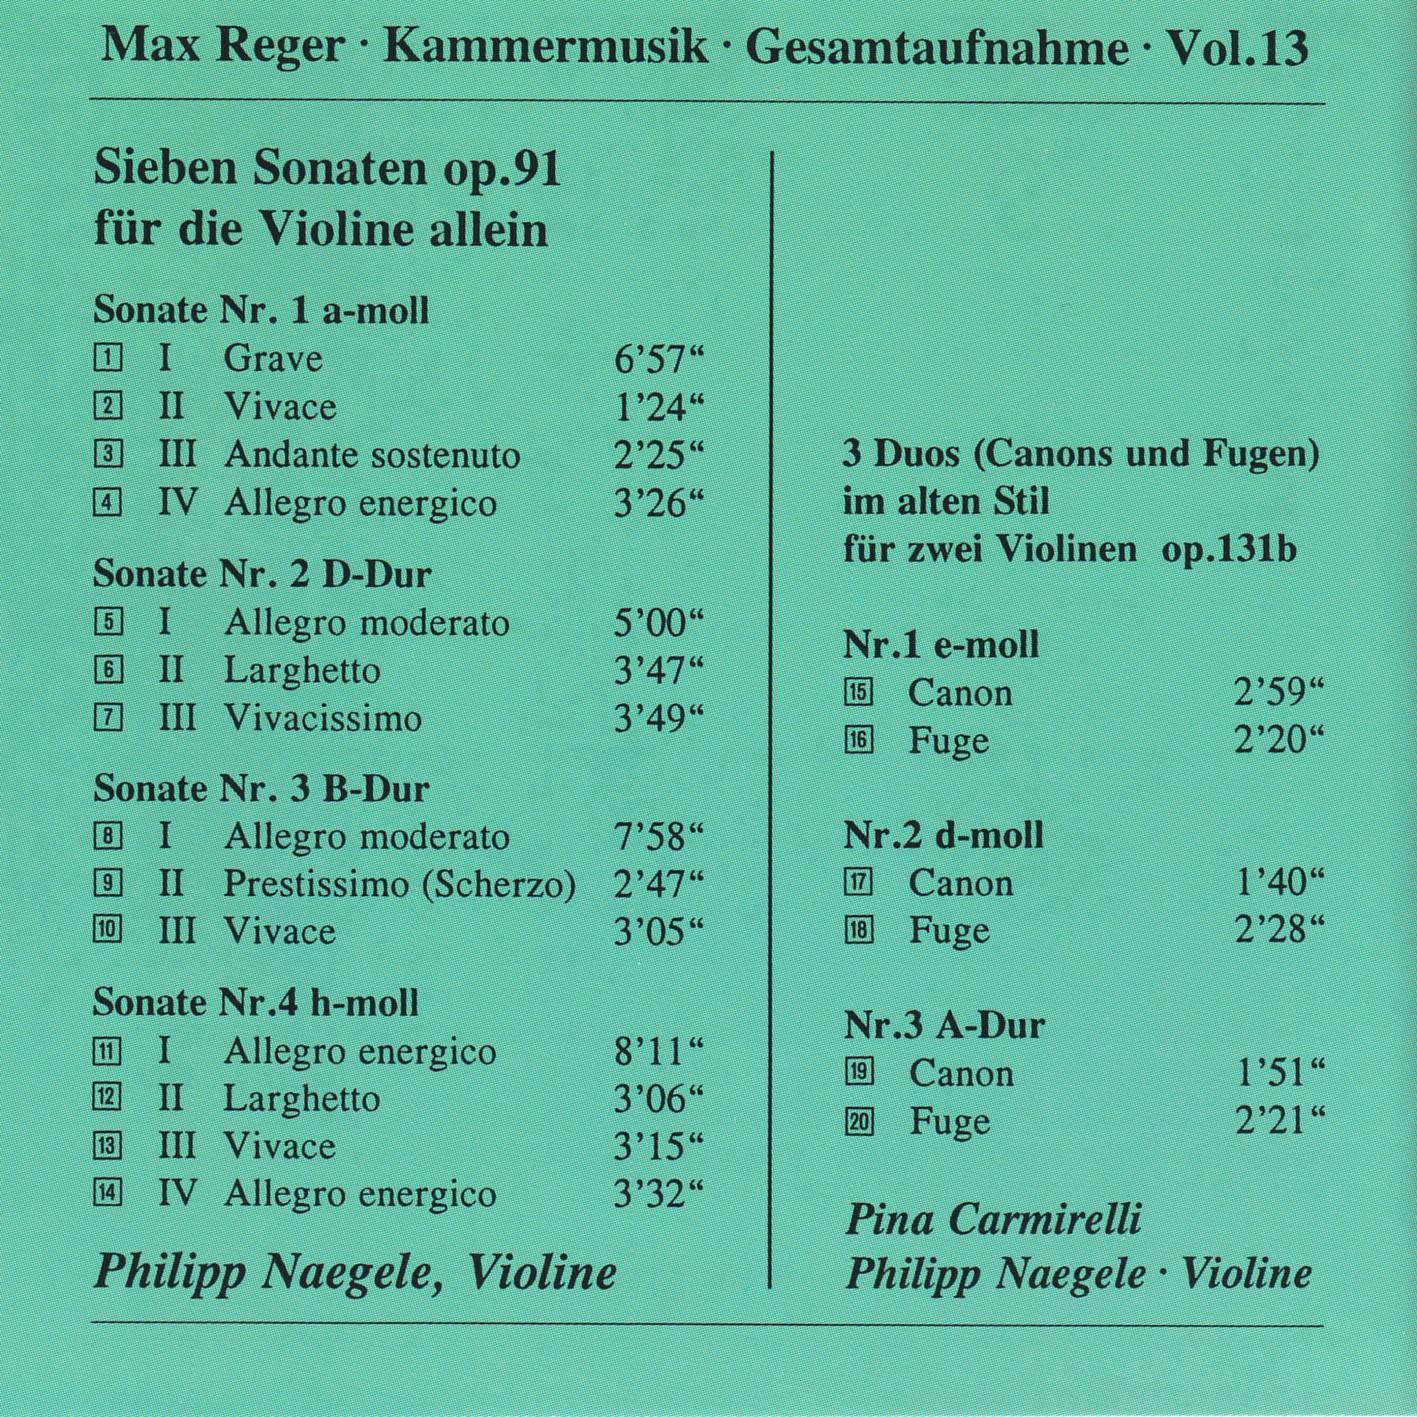 Max Reger - Kammermusik komplett Vol. 13